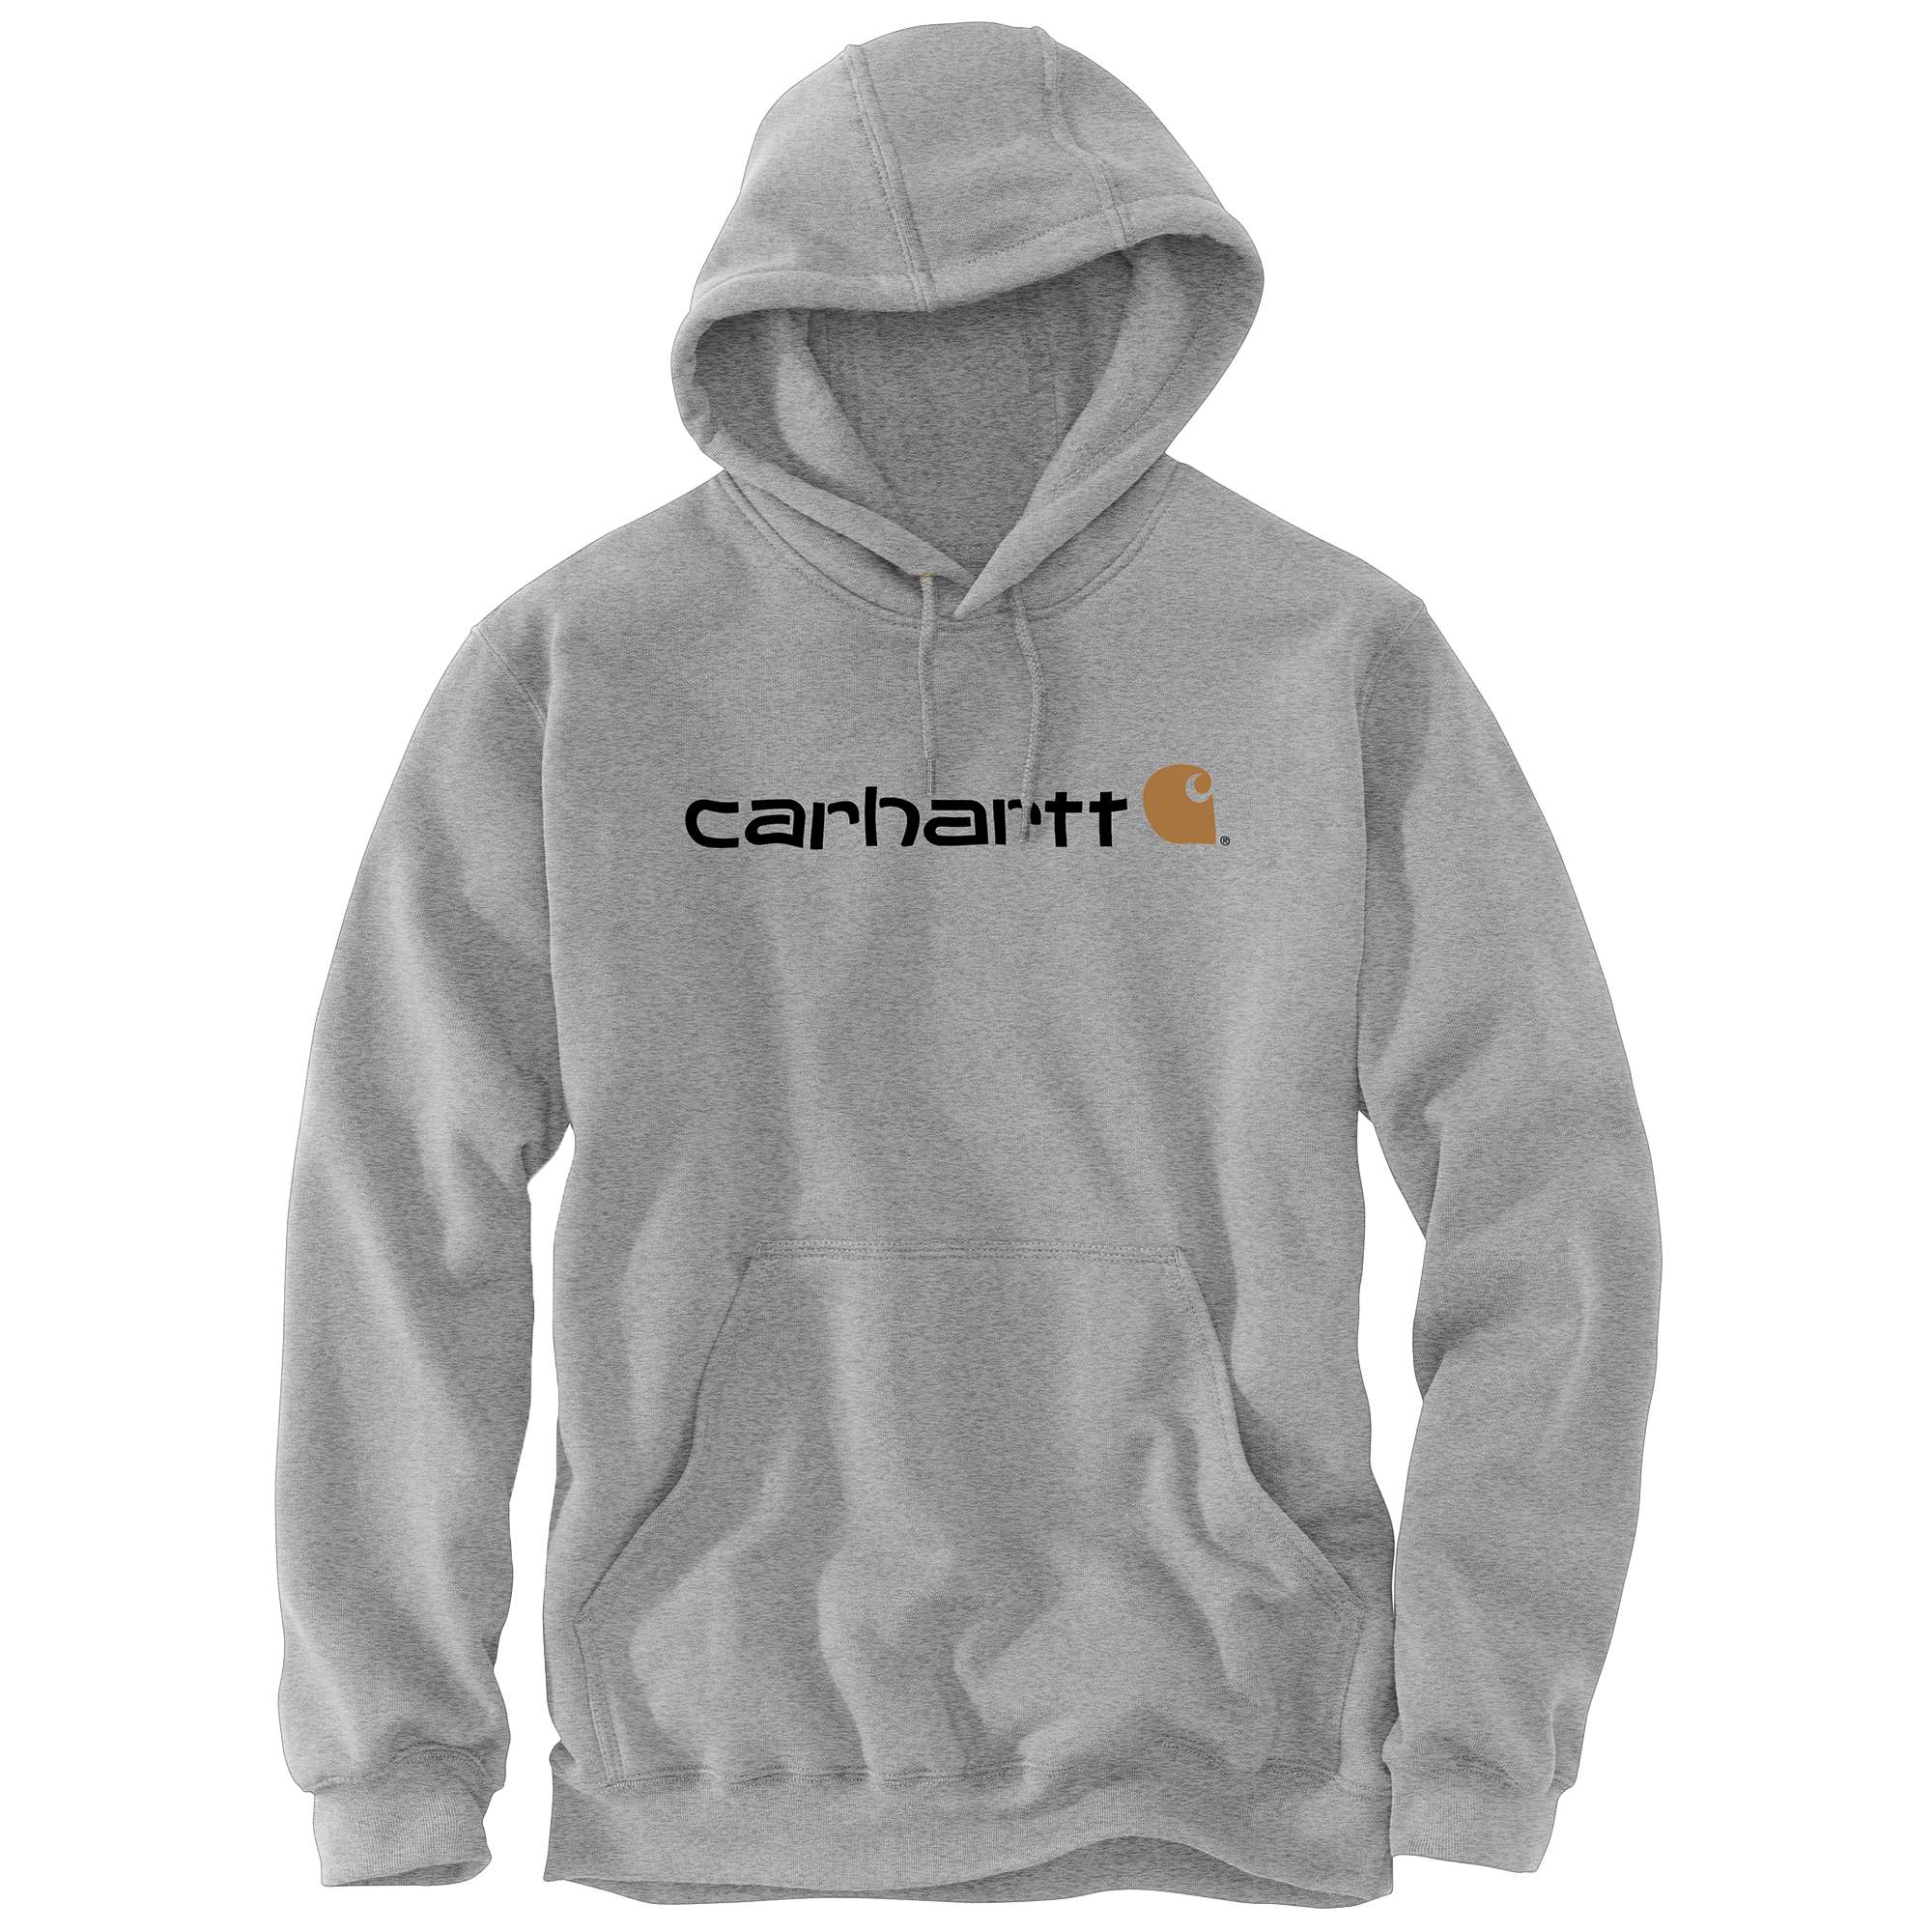 Carhartt Hoodies - Loose fit herensweater met capuchon en carhartt-logo Grijs - XL